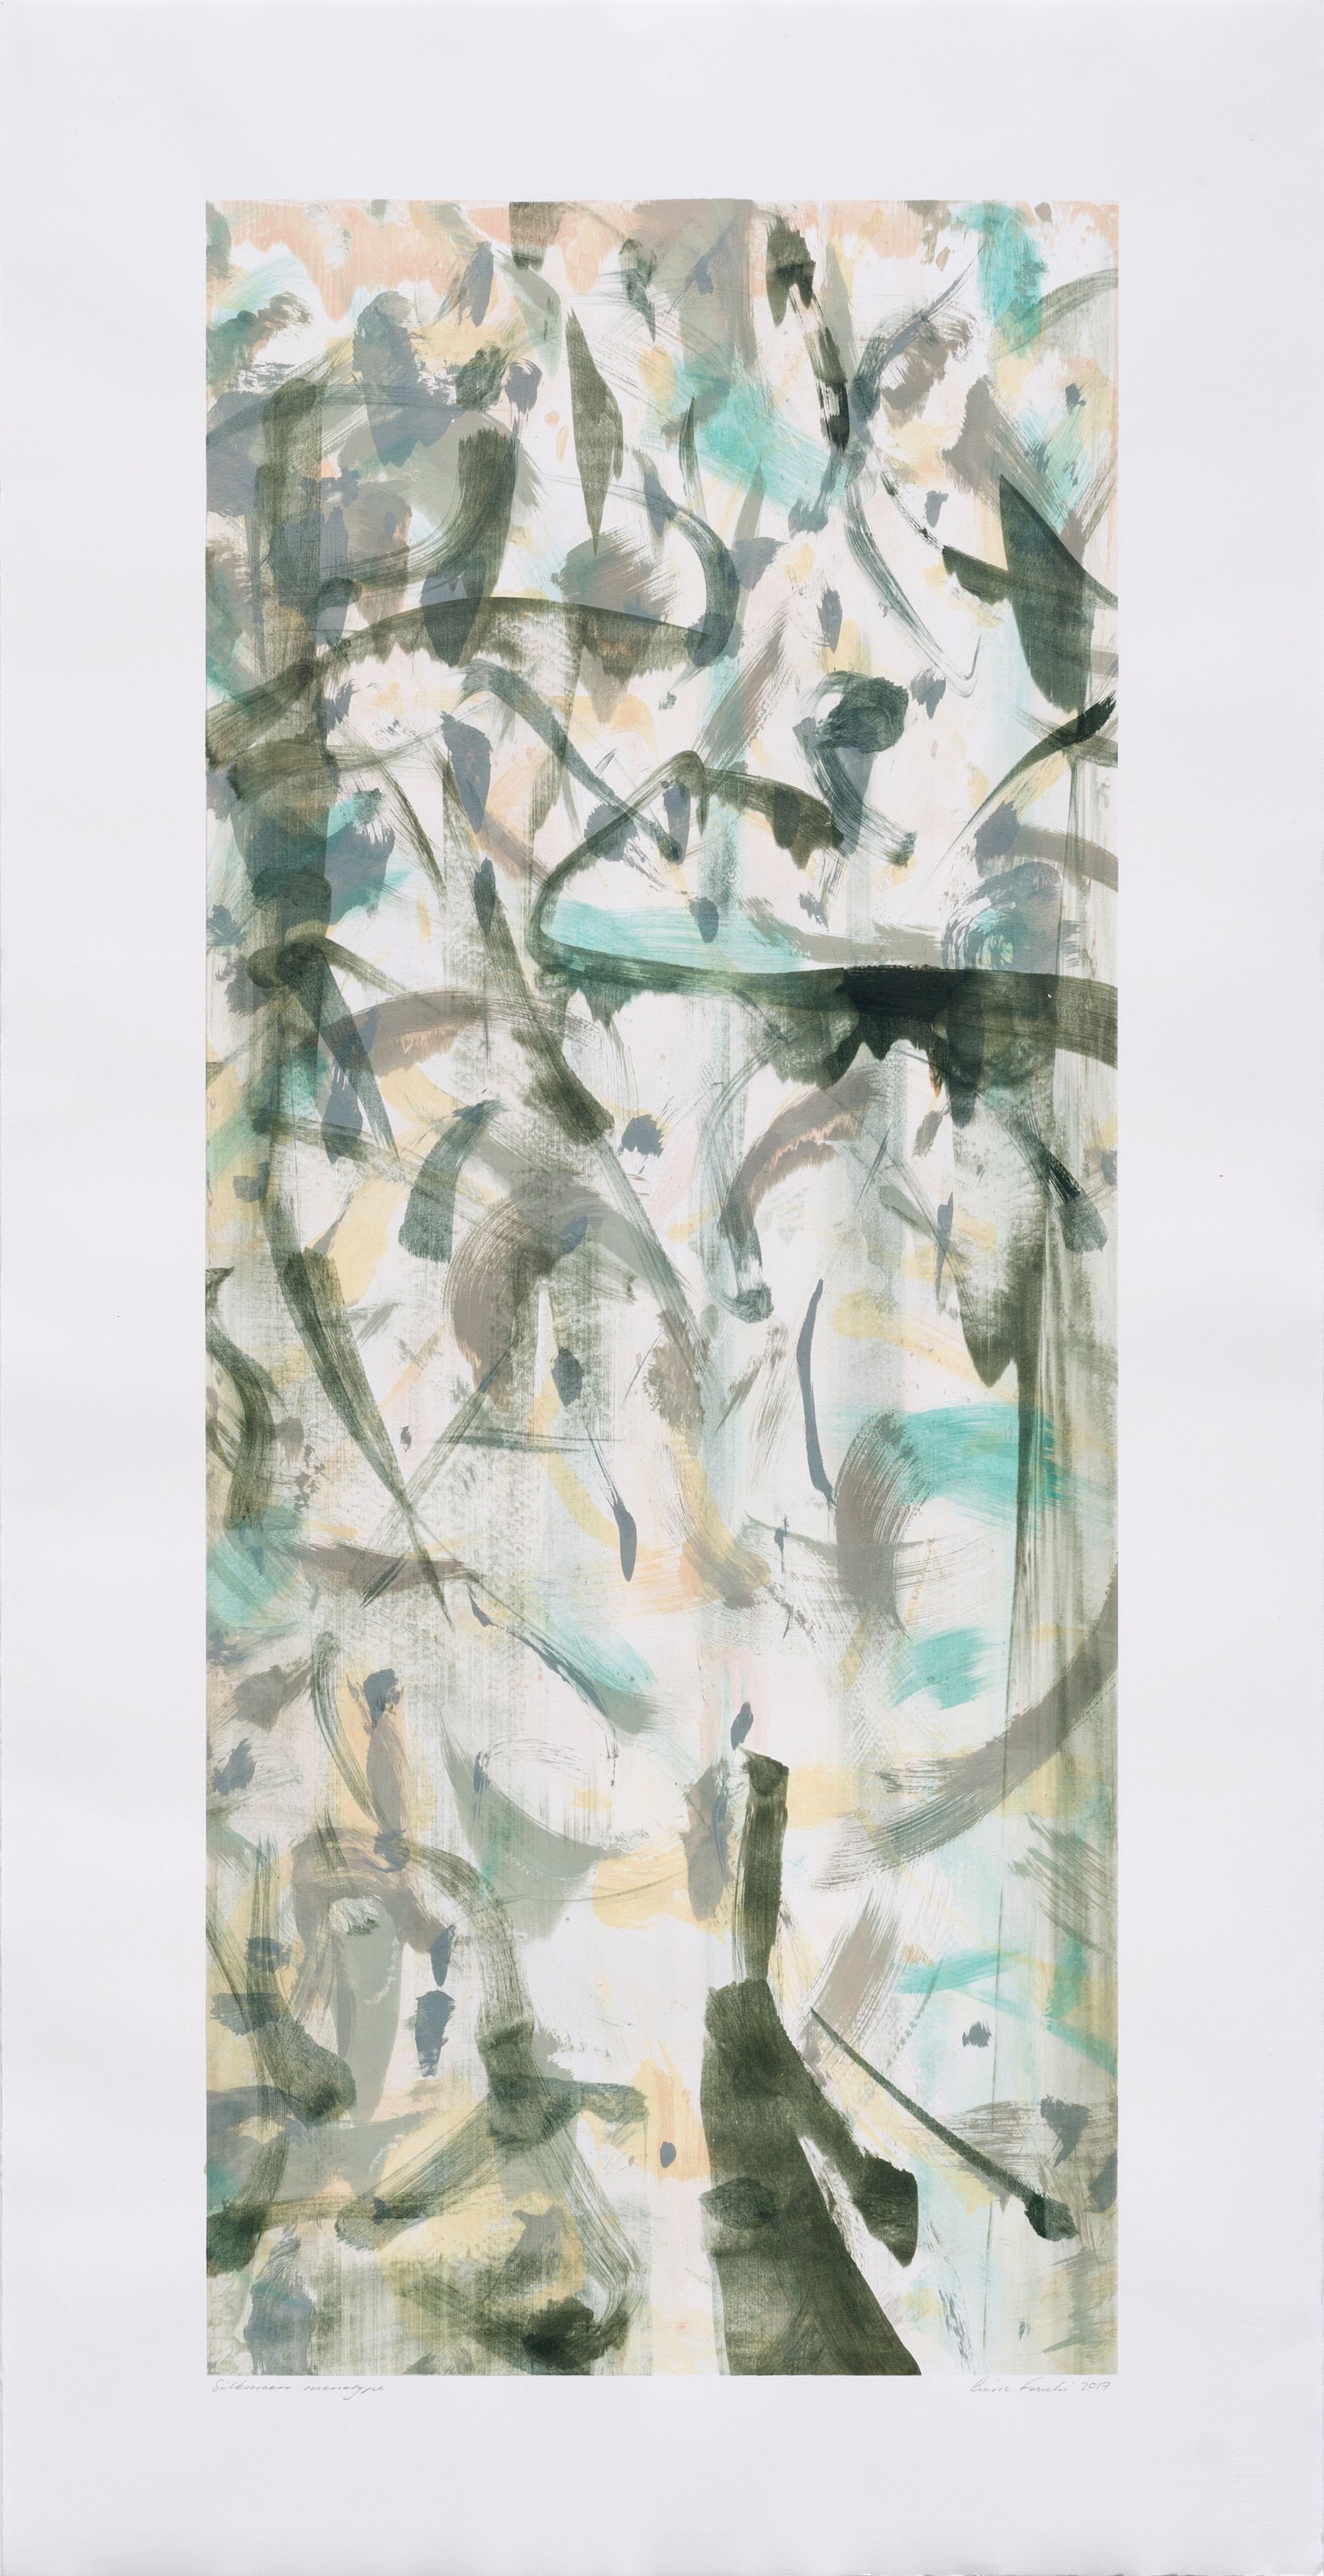  Pierre Fouché. Boekrol III. 2017. Silkscreen monotype on Zerkall Litho paper. 90 x 37.5 cm 